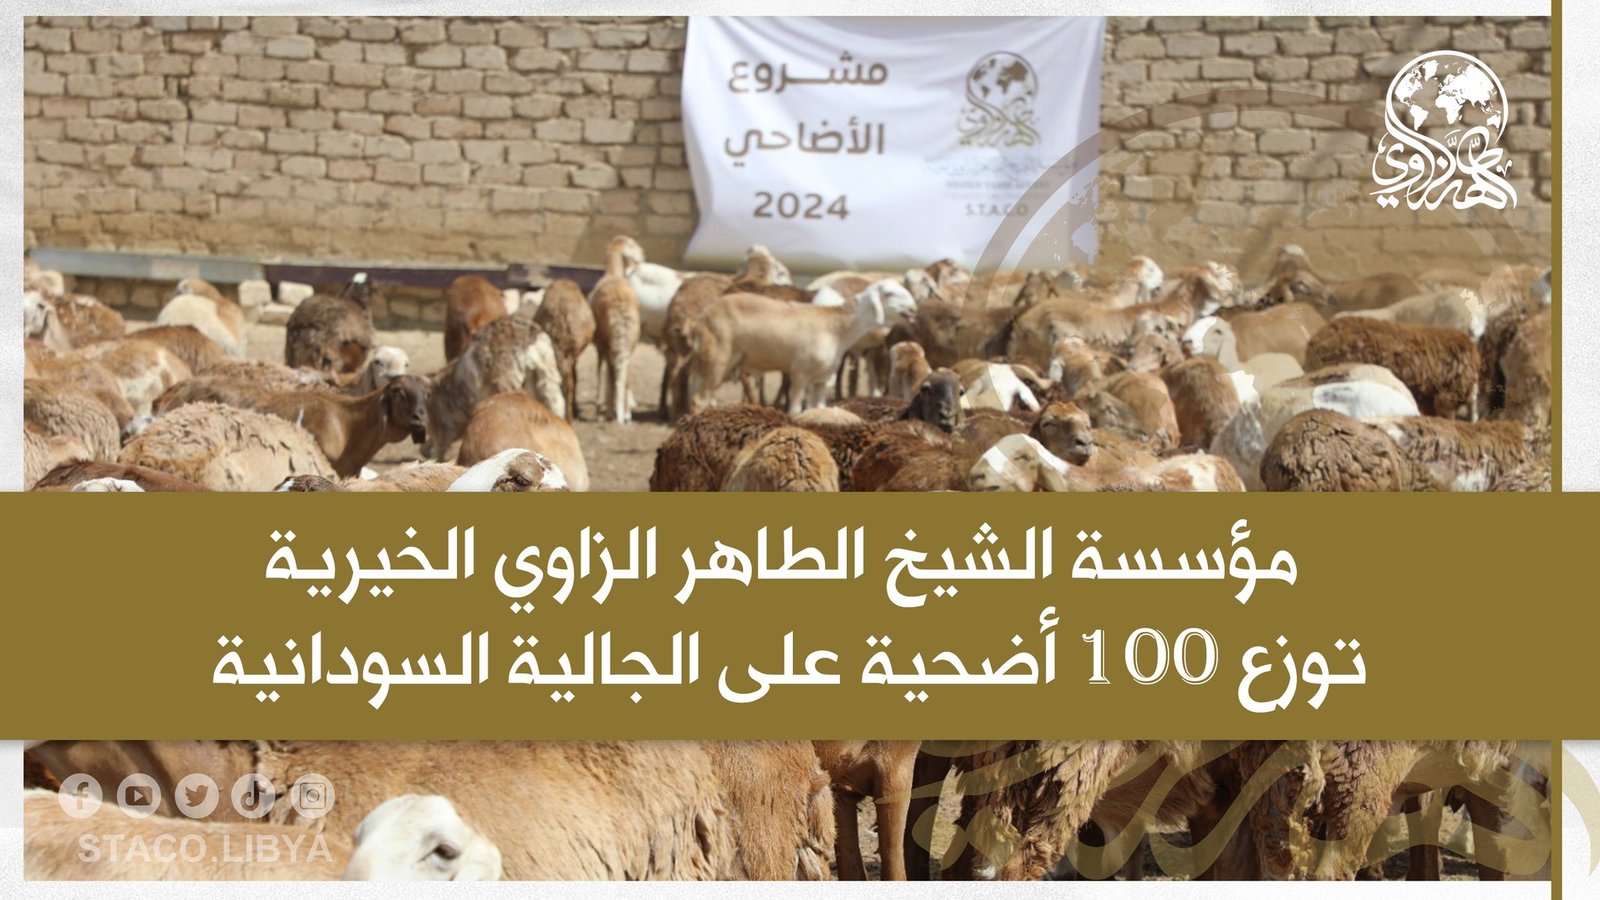 مؤسسة الشيخ الطاهر الزاوي الخيرية توزع 100 أضحية على الجالية السودانية